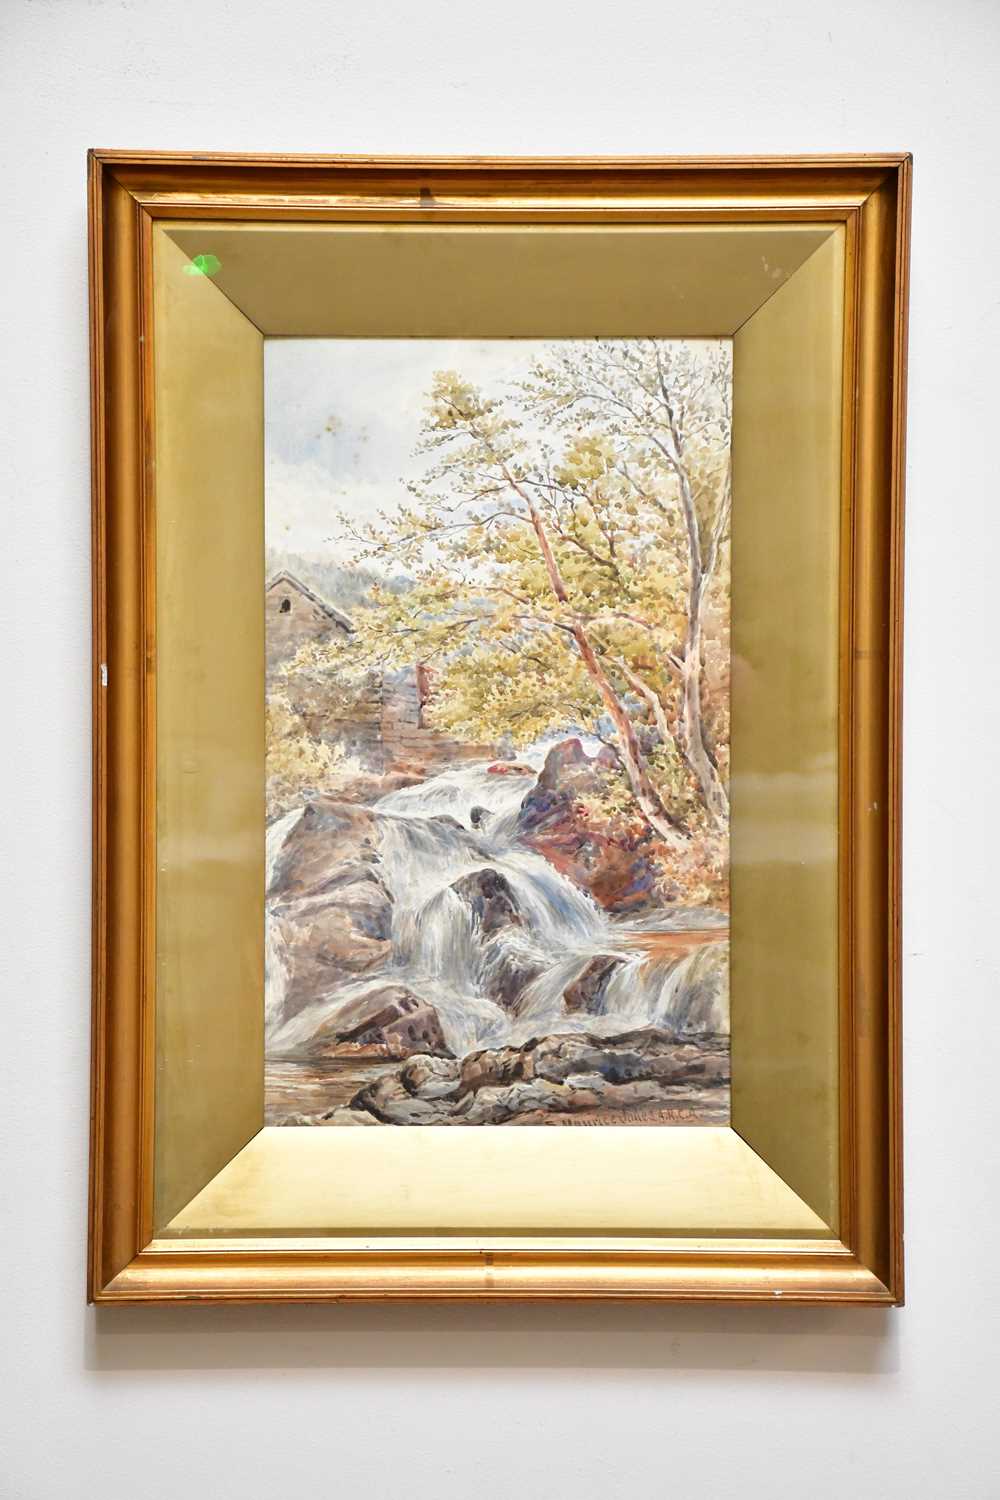 SAMUEL MAURICE JONES; watercolour, river scene, signed lower right, 48 x 29cm, framed and glazed.